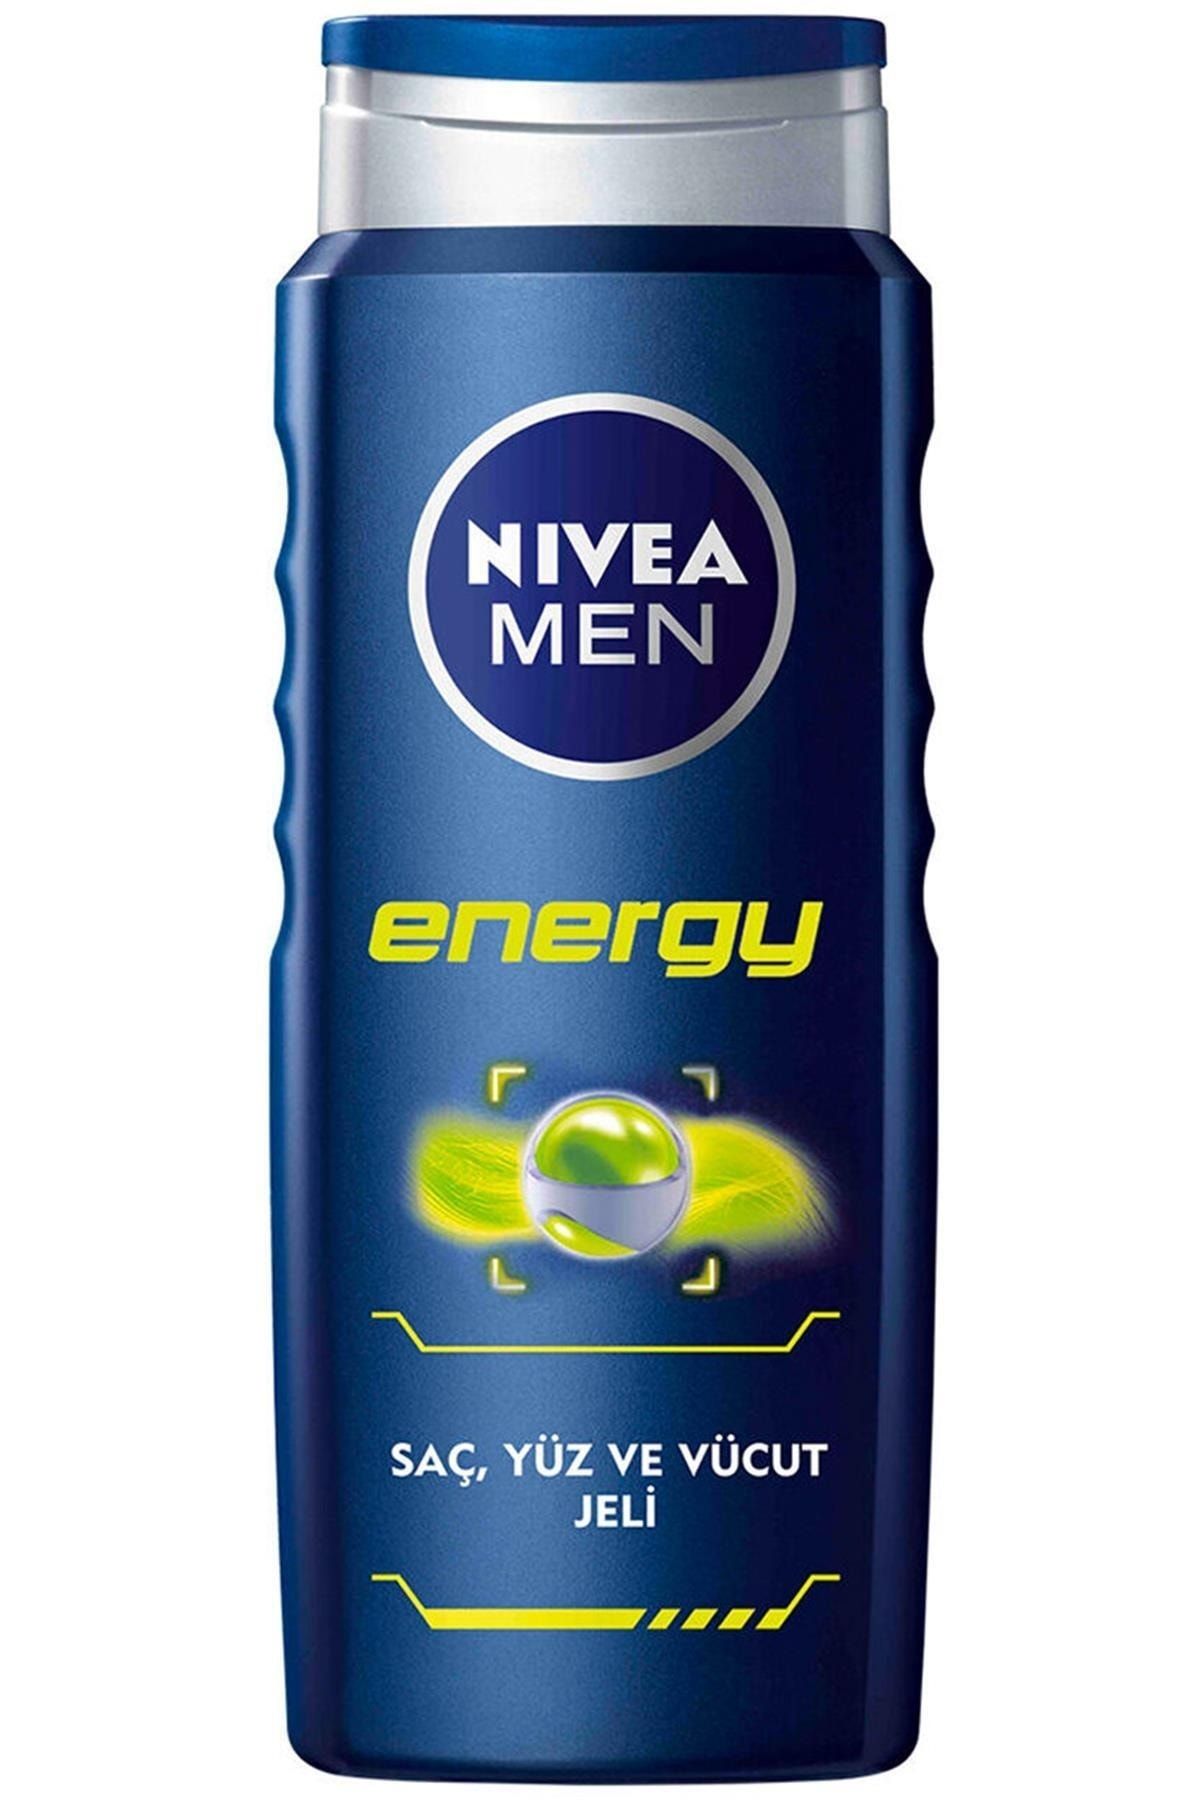 NIVEA Duş Men Energy Yüz , Saç Ve Vücut Jeli 500 ml.